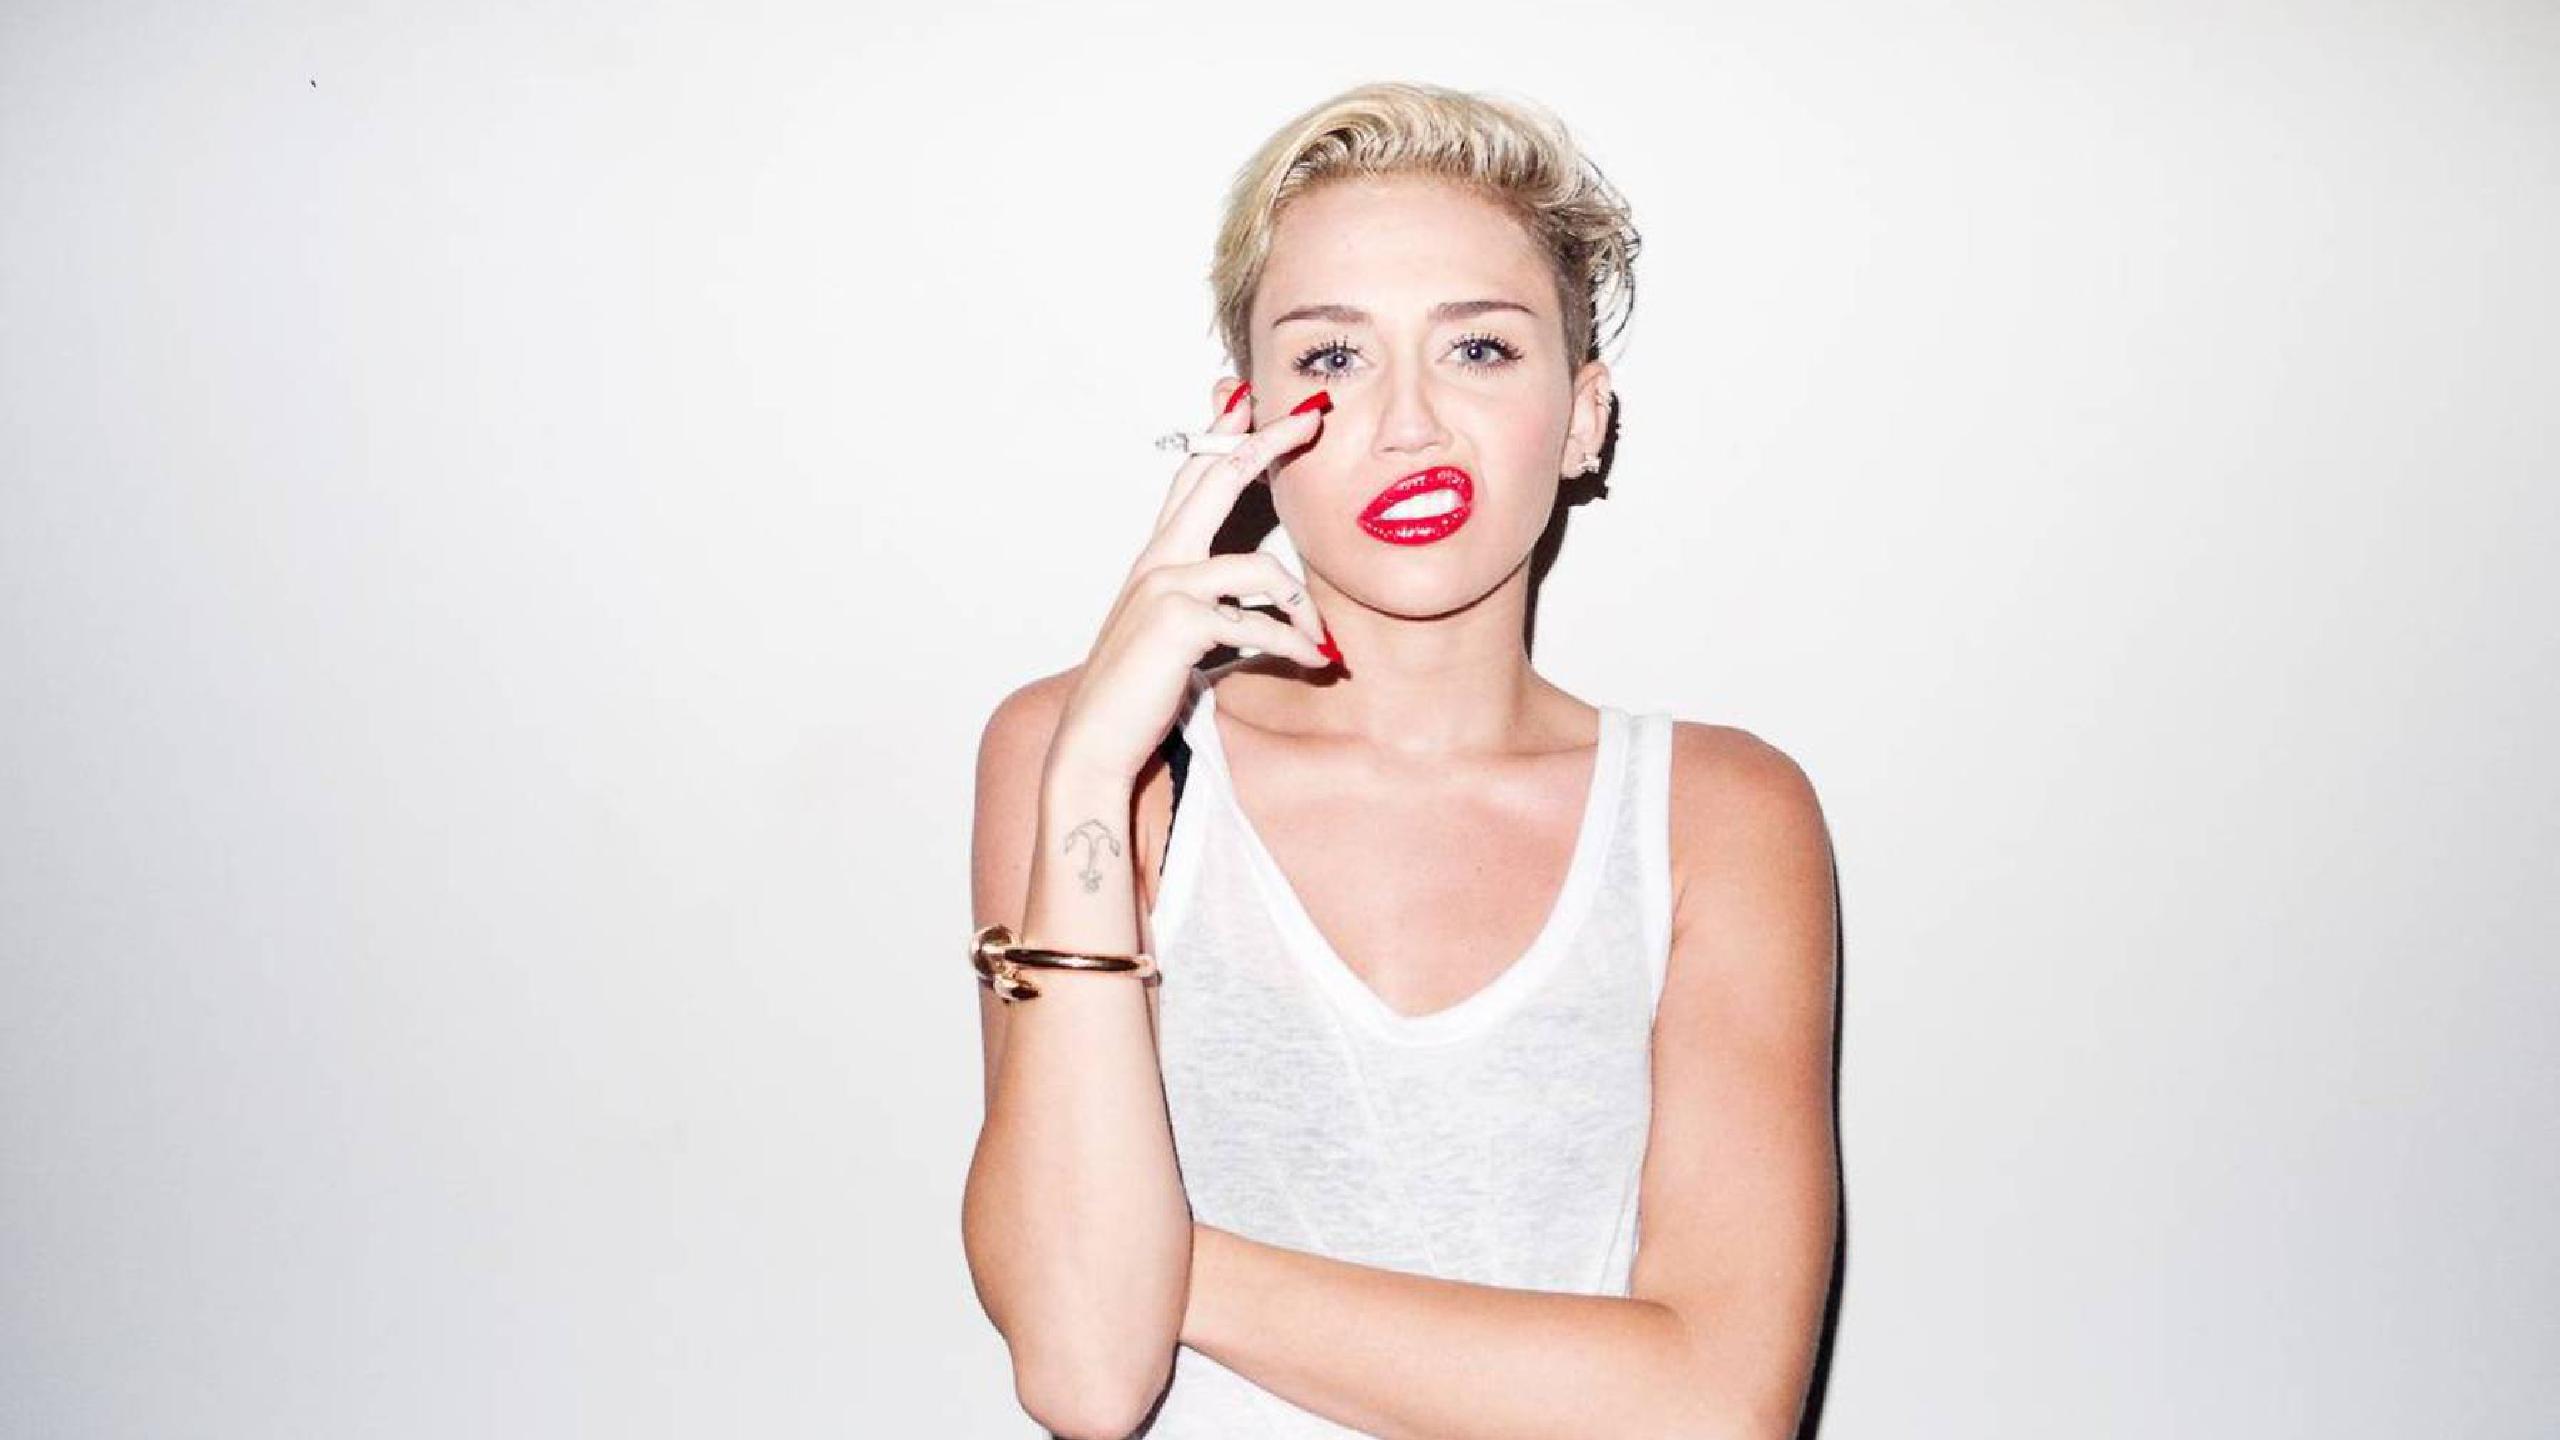 Miley Cyrus fechas de gira 2022 2023. Miley Cyrus entradas y conciertos